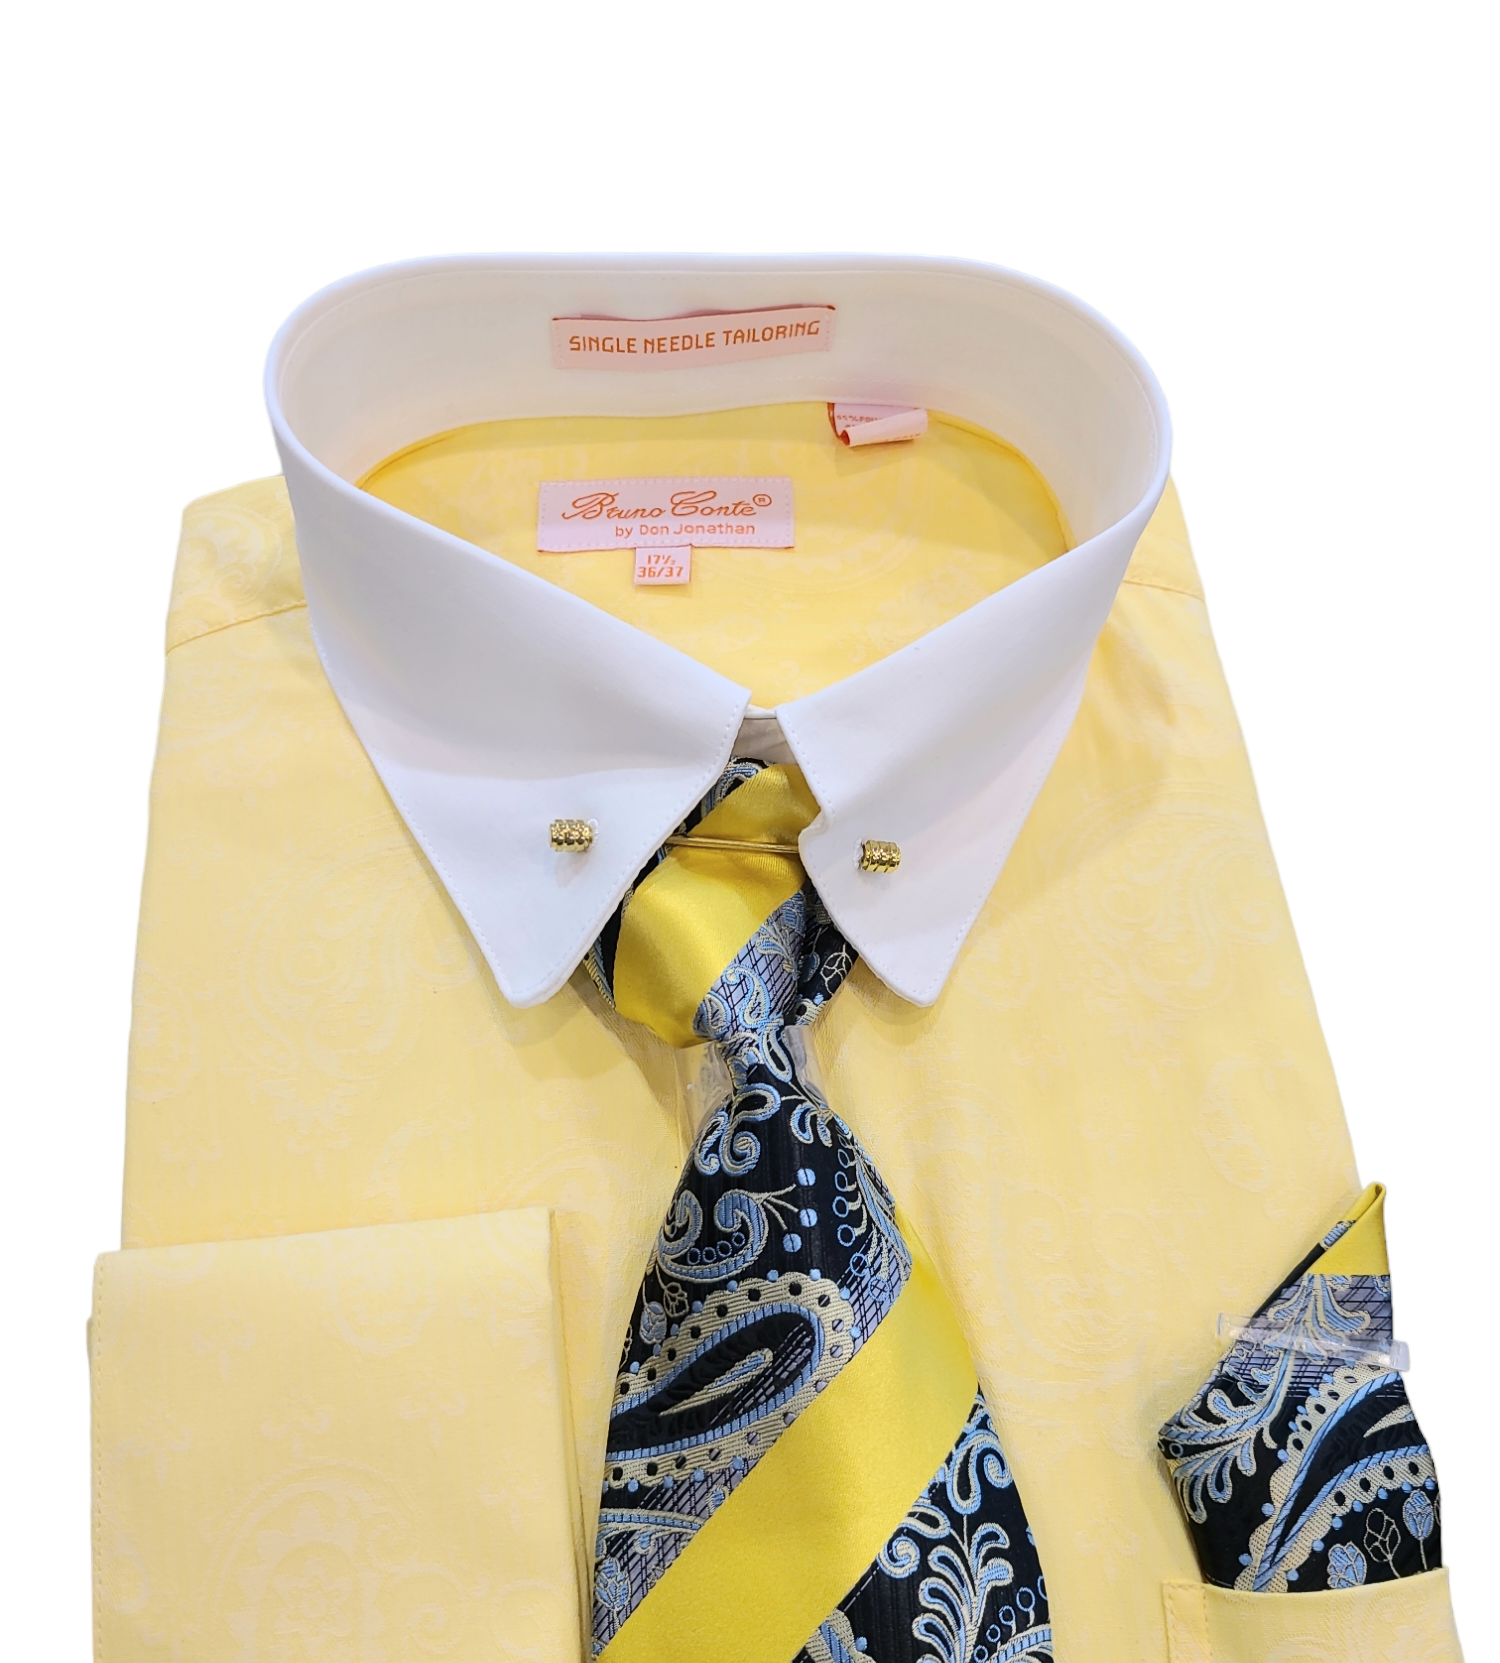 Bruno Conte Dress Shirt Set with Tie Bar